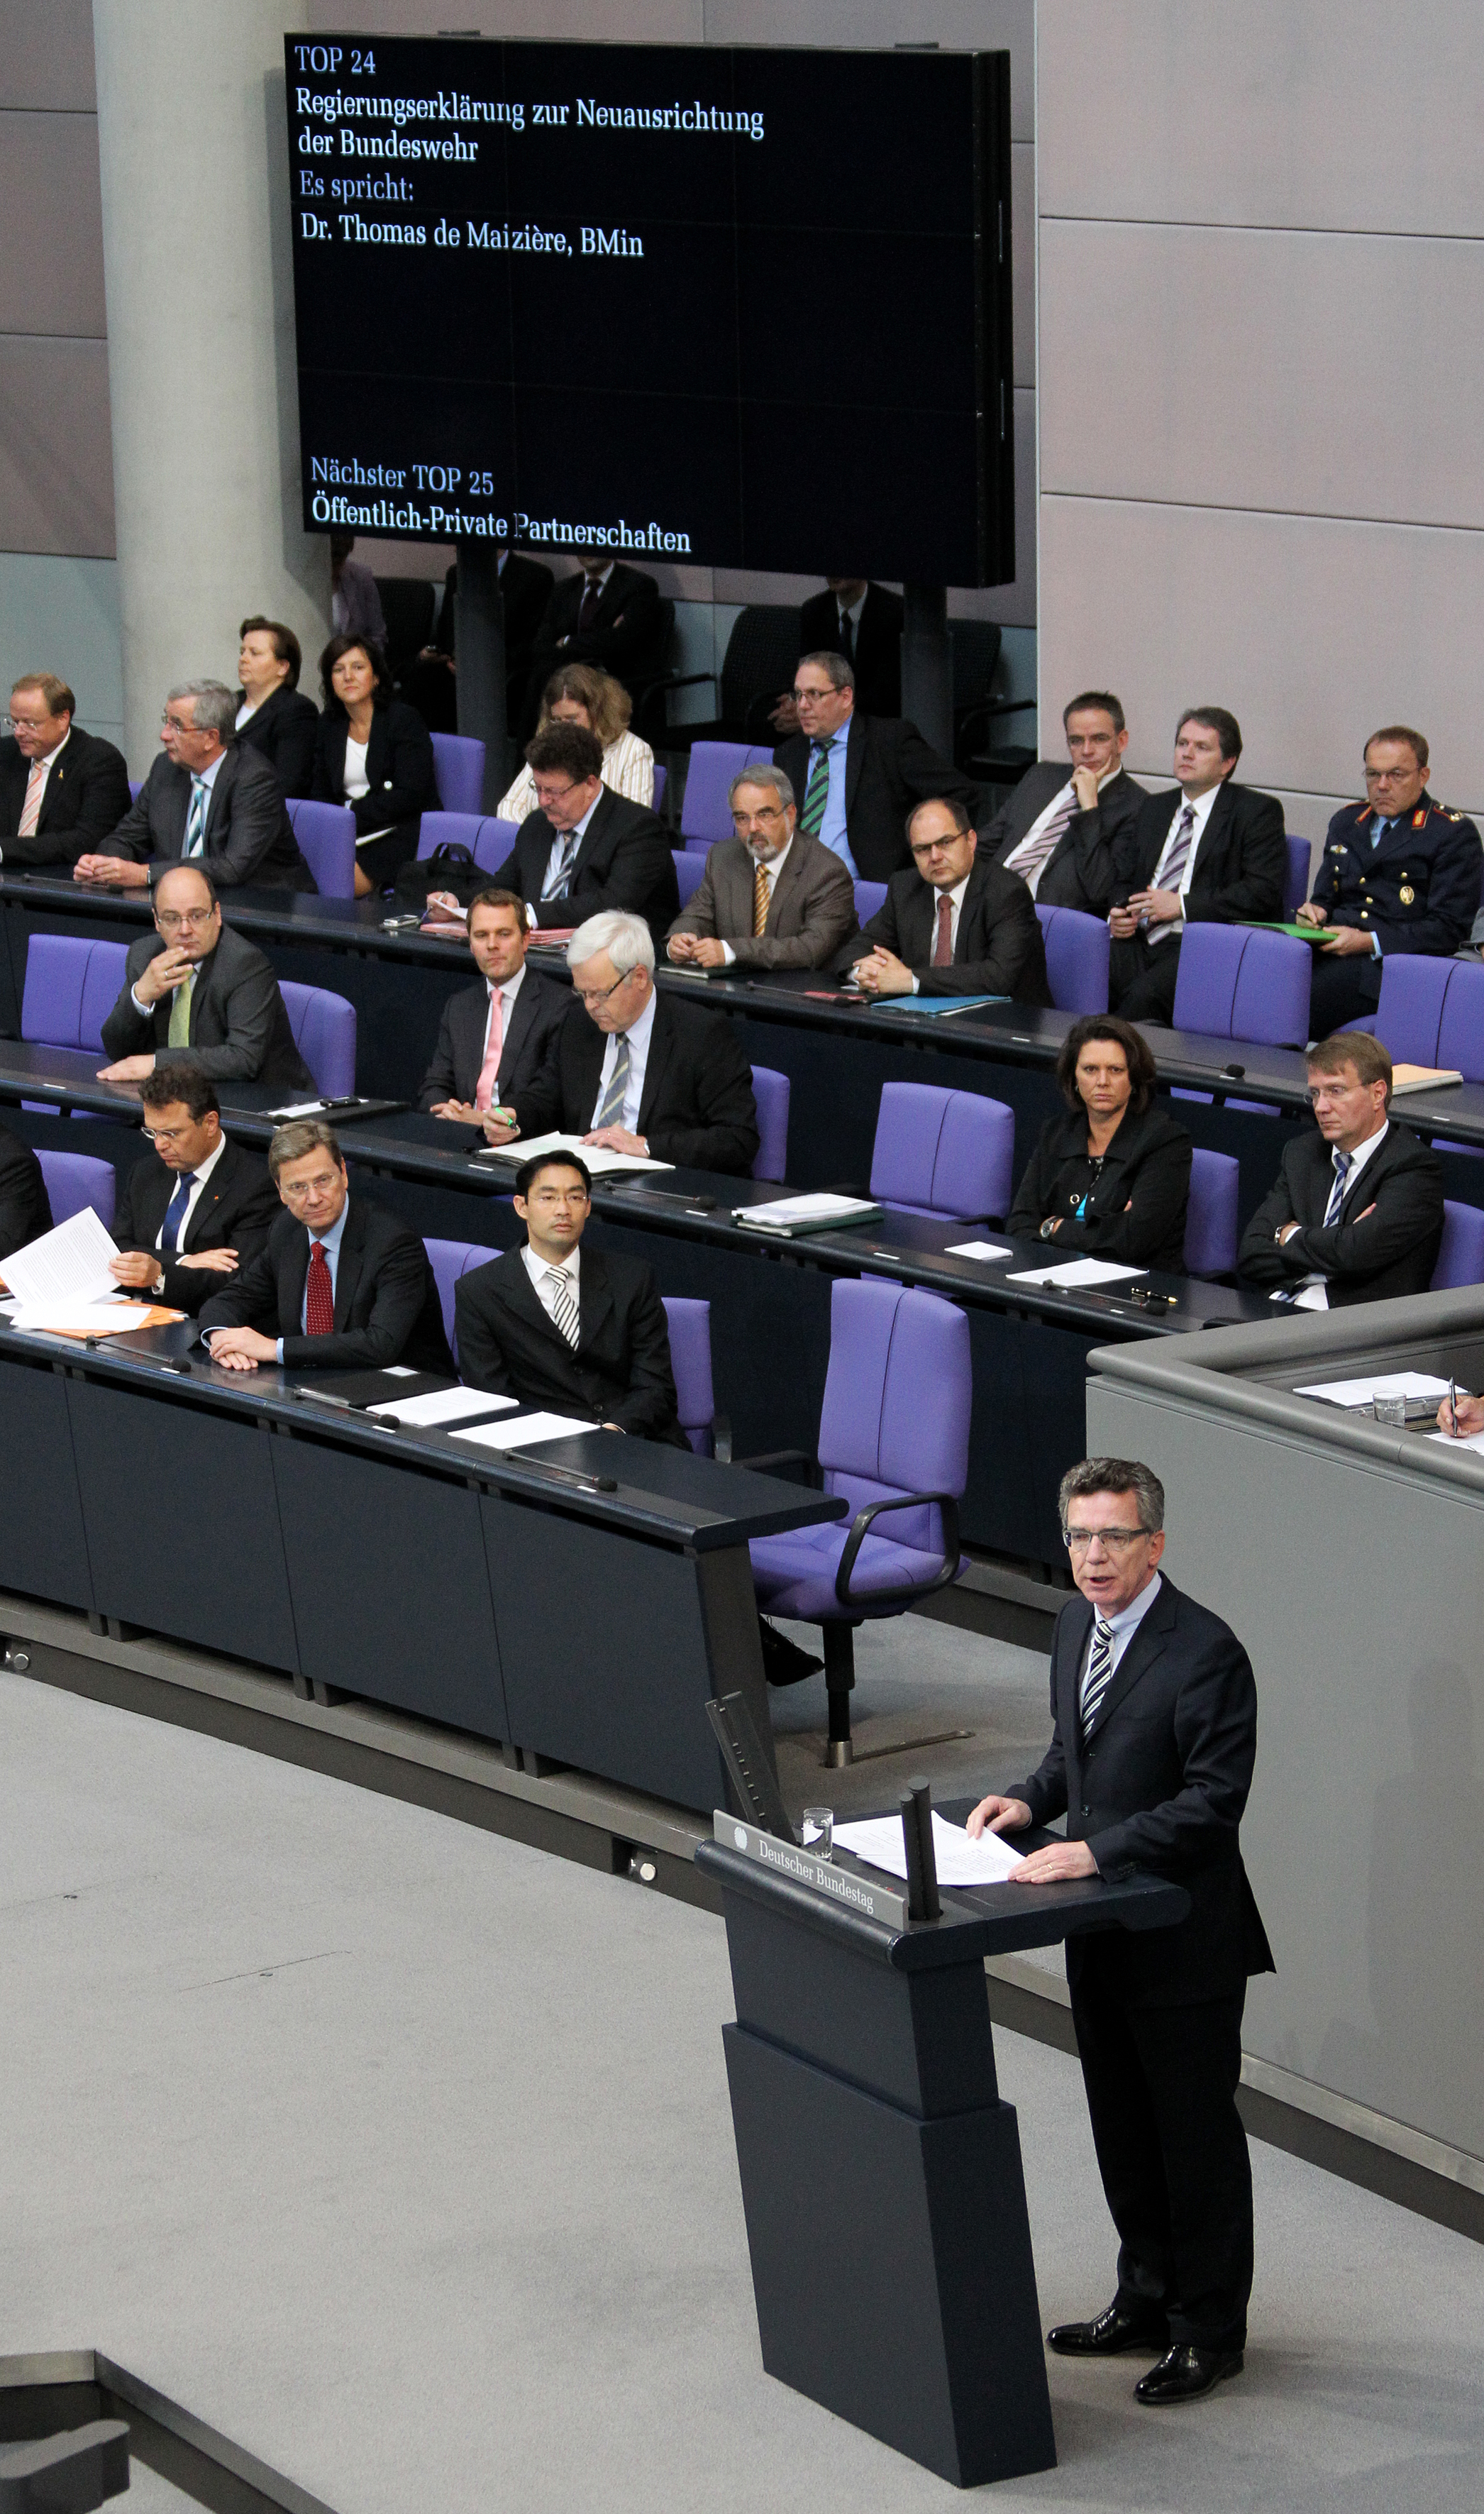 Auf dem Bild sind Minister im Reichstag Berlin zu sehen